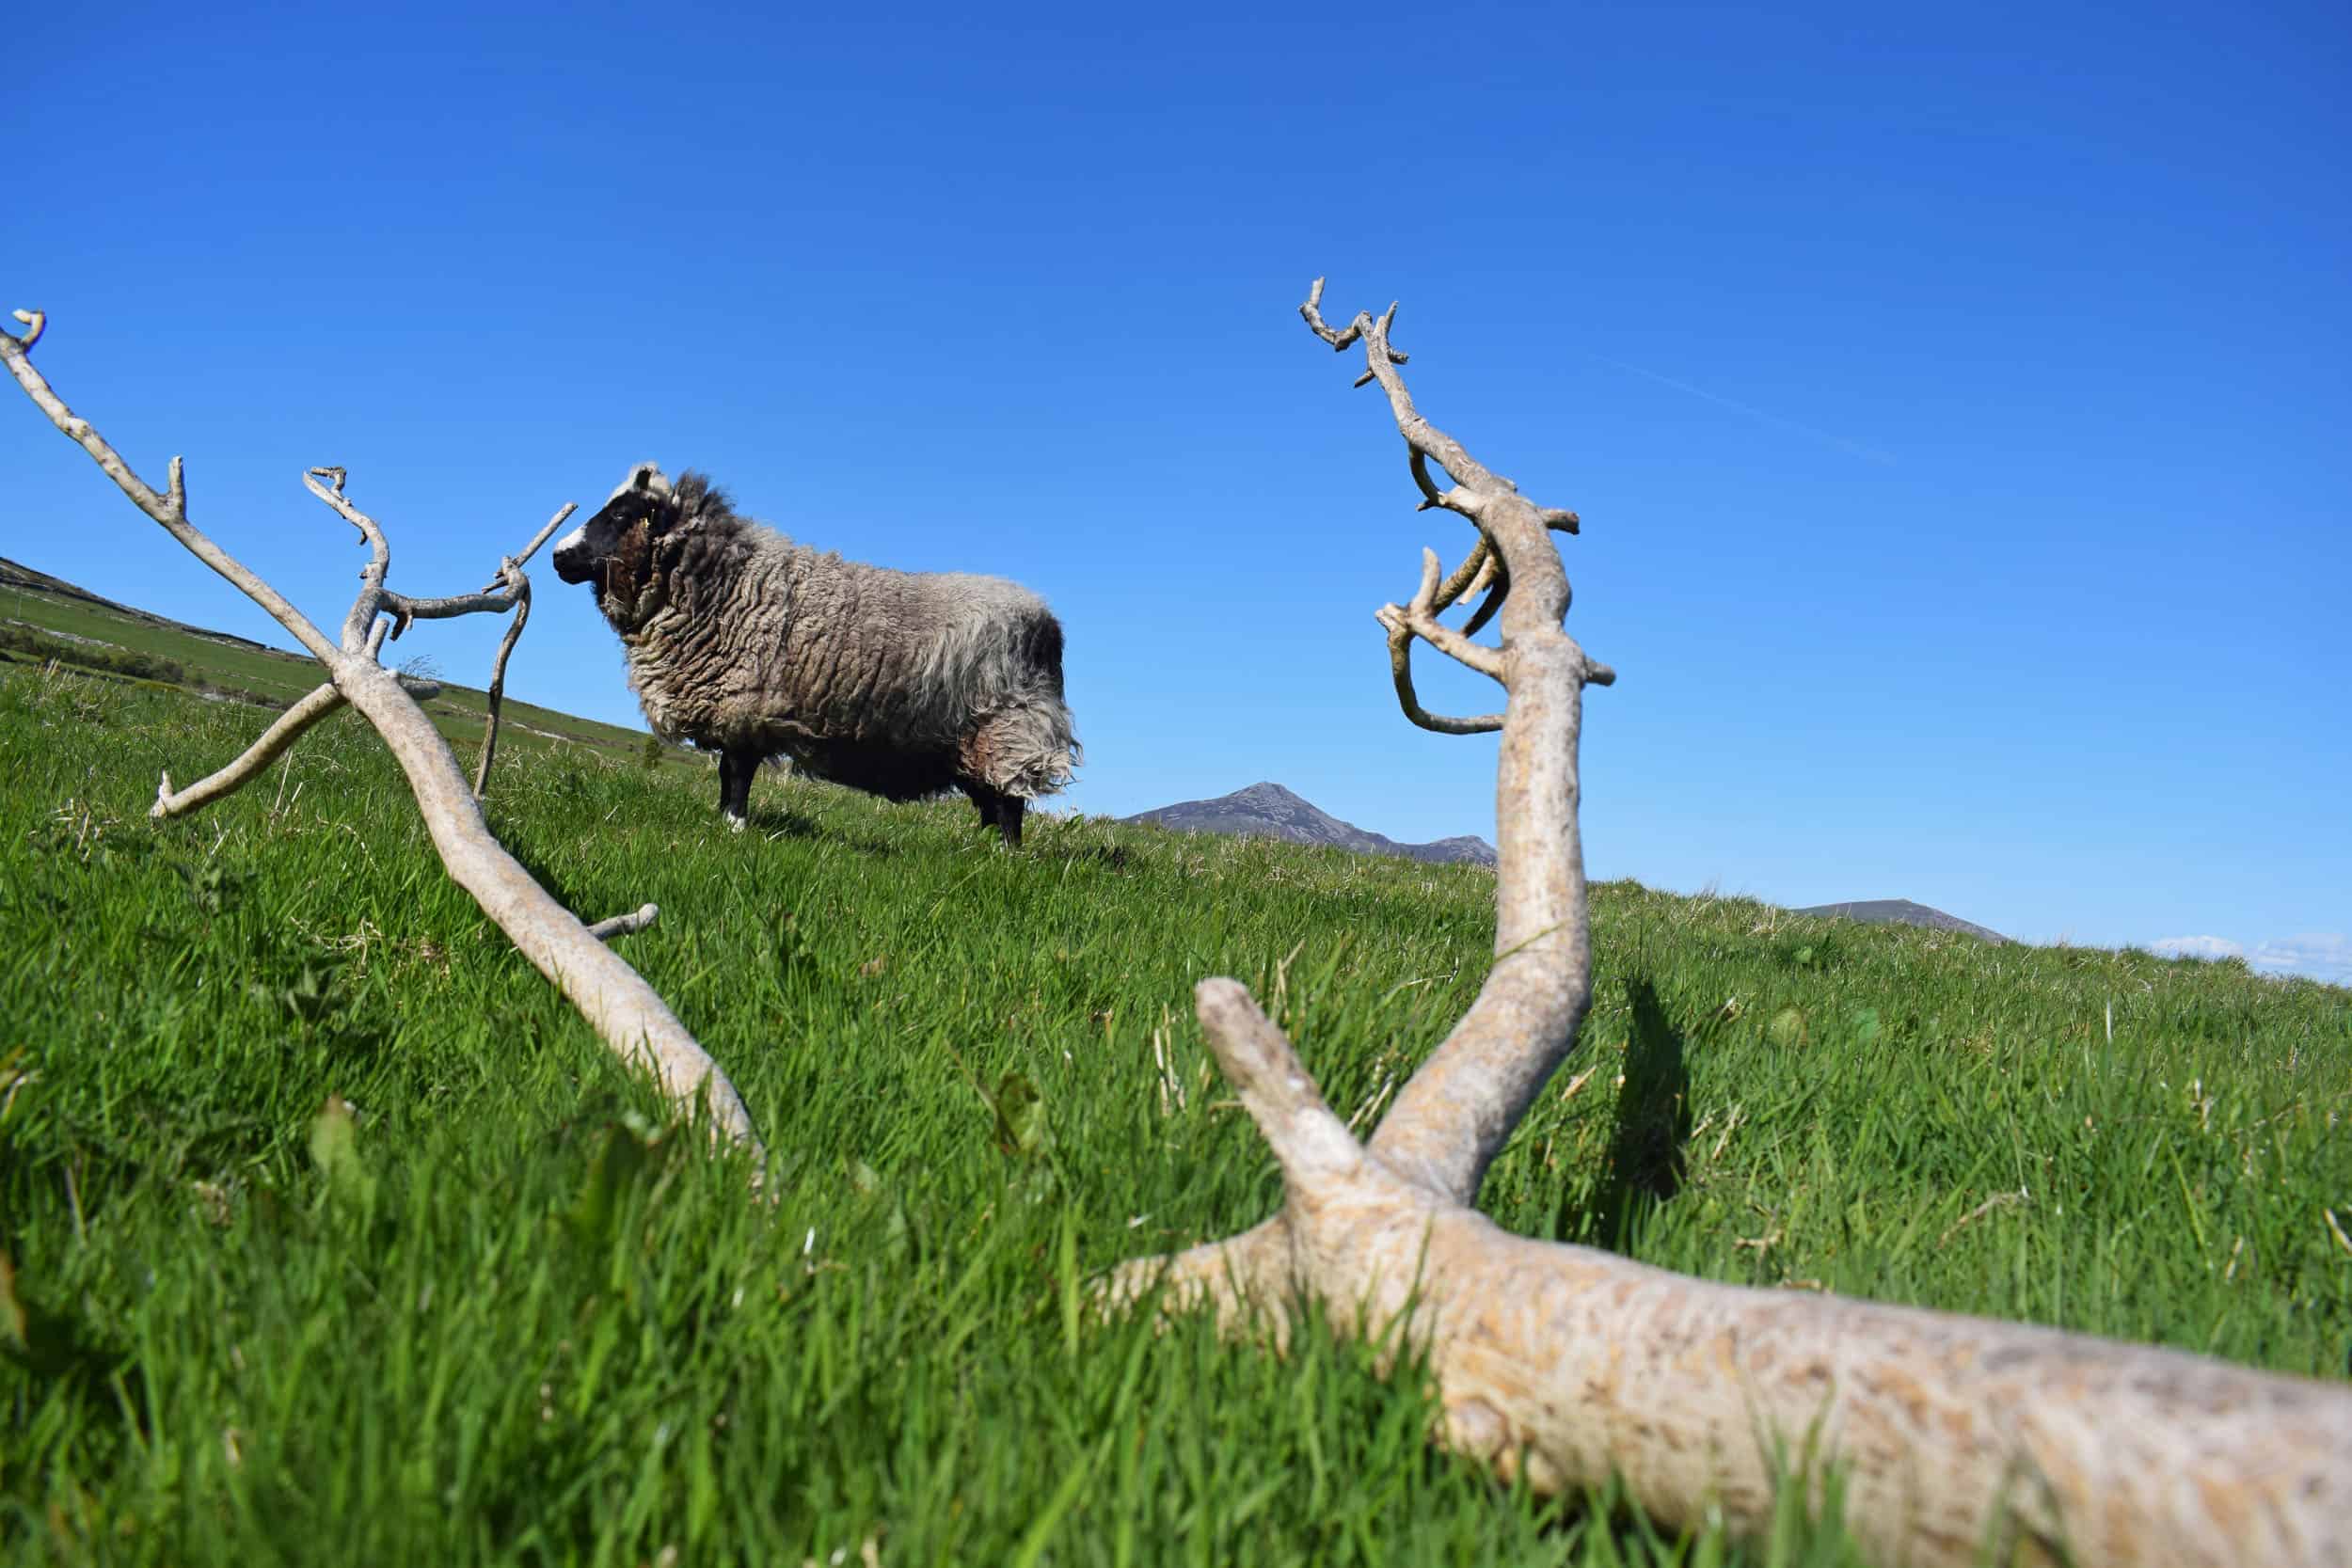 Holly pet lamb sheep jacob cross shetland spotted black grey white wales gwynedd tree ash